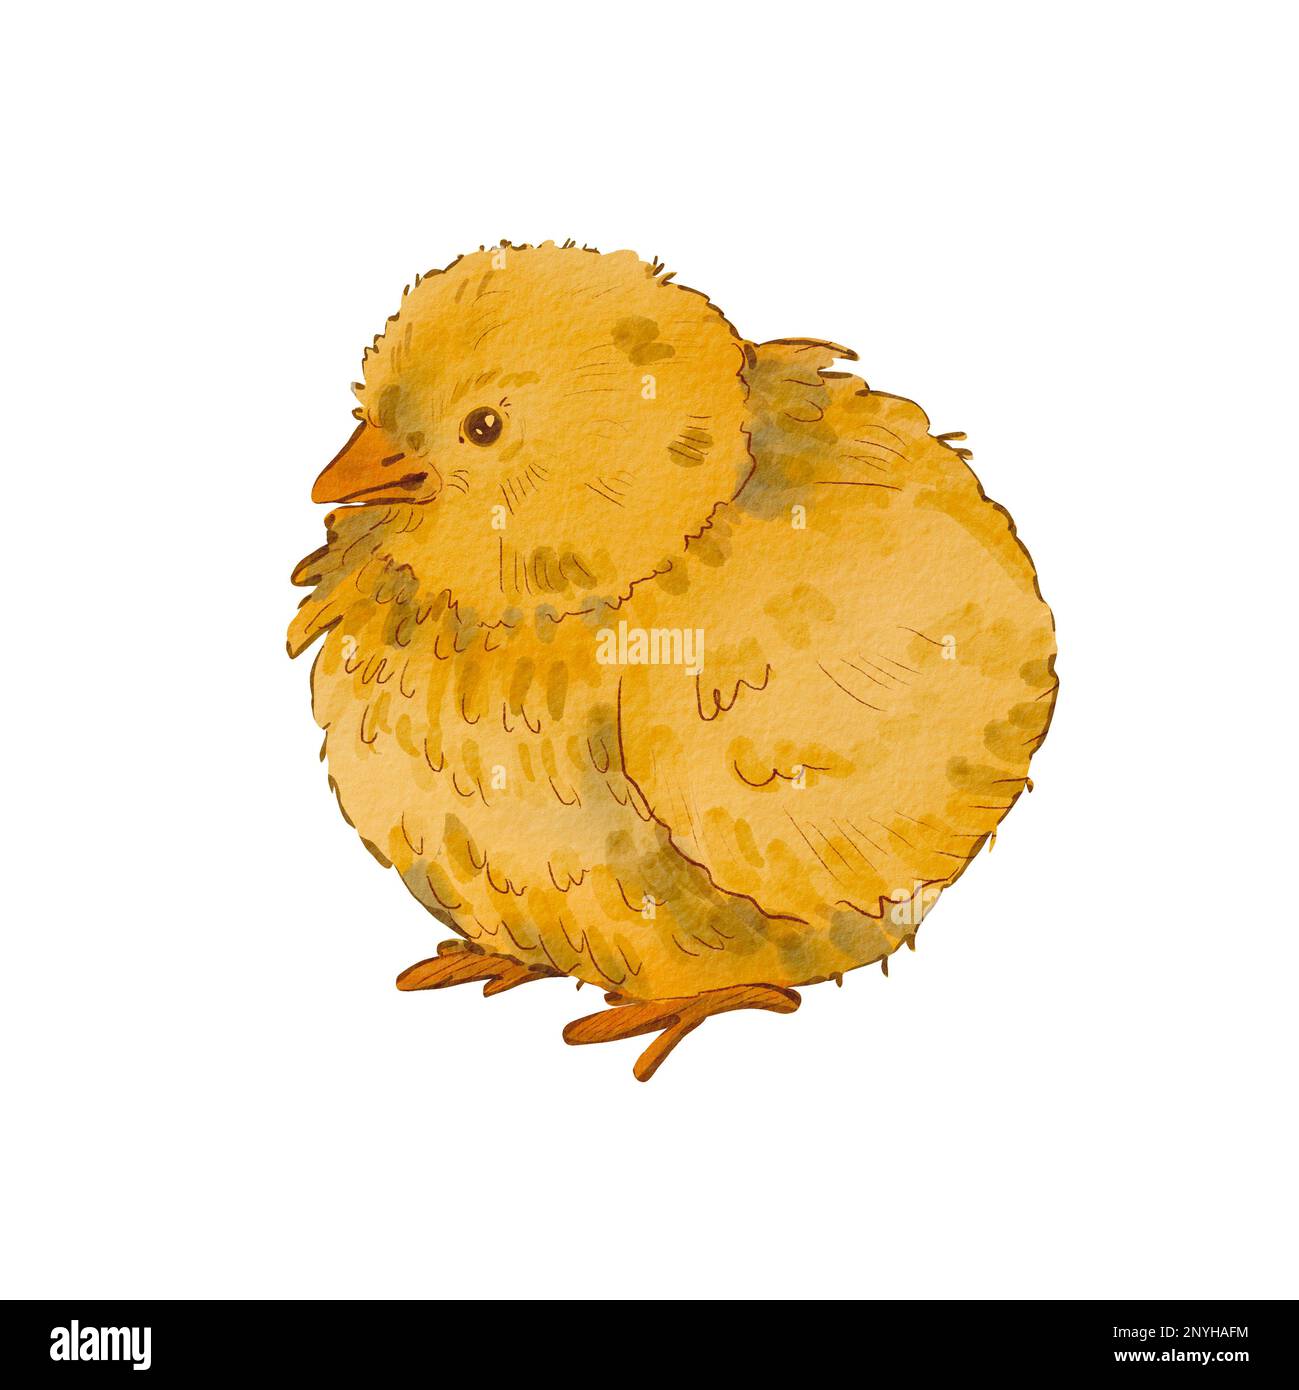 Poulet rond mignon isolé sur fond blanc. Illustration aquarelle d'un poulet jaune nouveau-né. Motif Pâques. Poussin doux. Convient pour les posta Banque D'Images